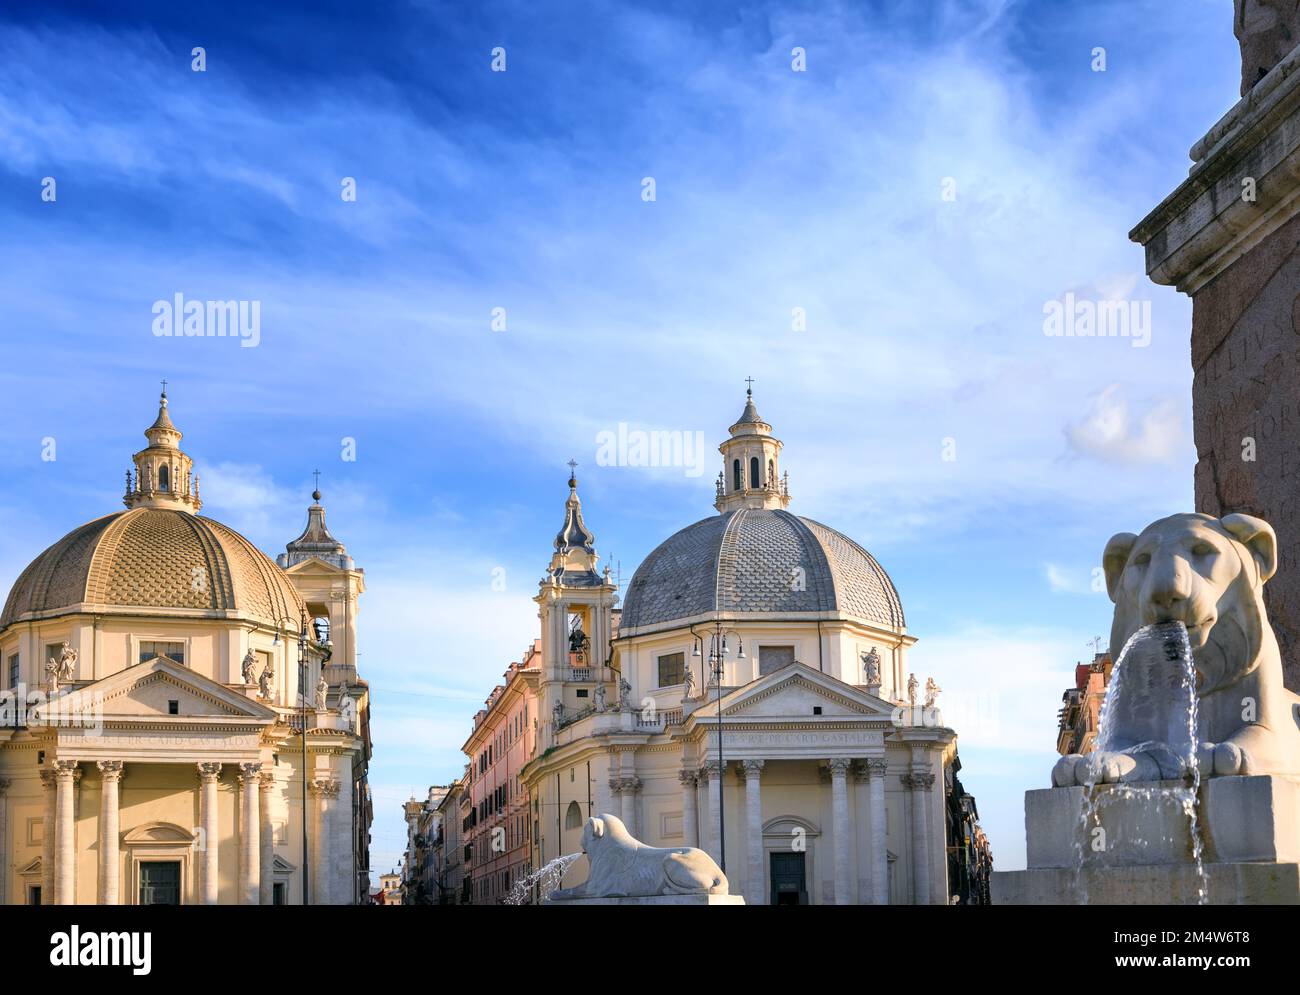 Vue sur la Piazza del Popolo (place du peuple) à Rome, Italie : églises de Santa Maria à Montesanto et Santa Maria dei Miracoli. Banque D'Images